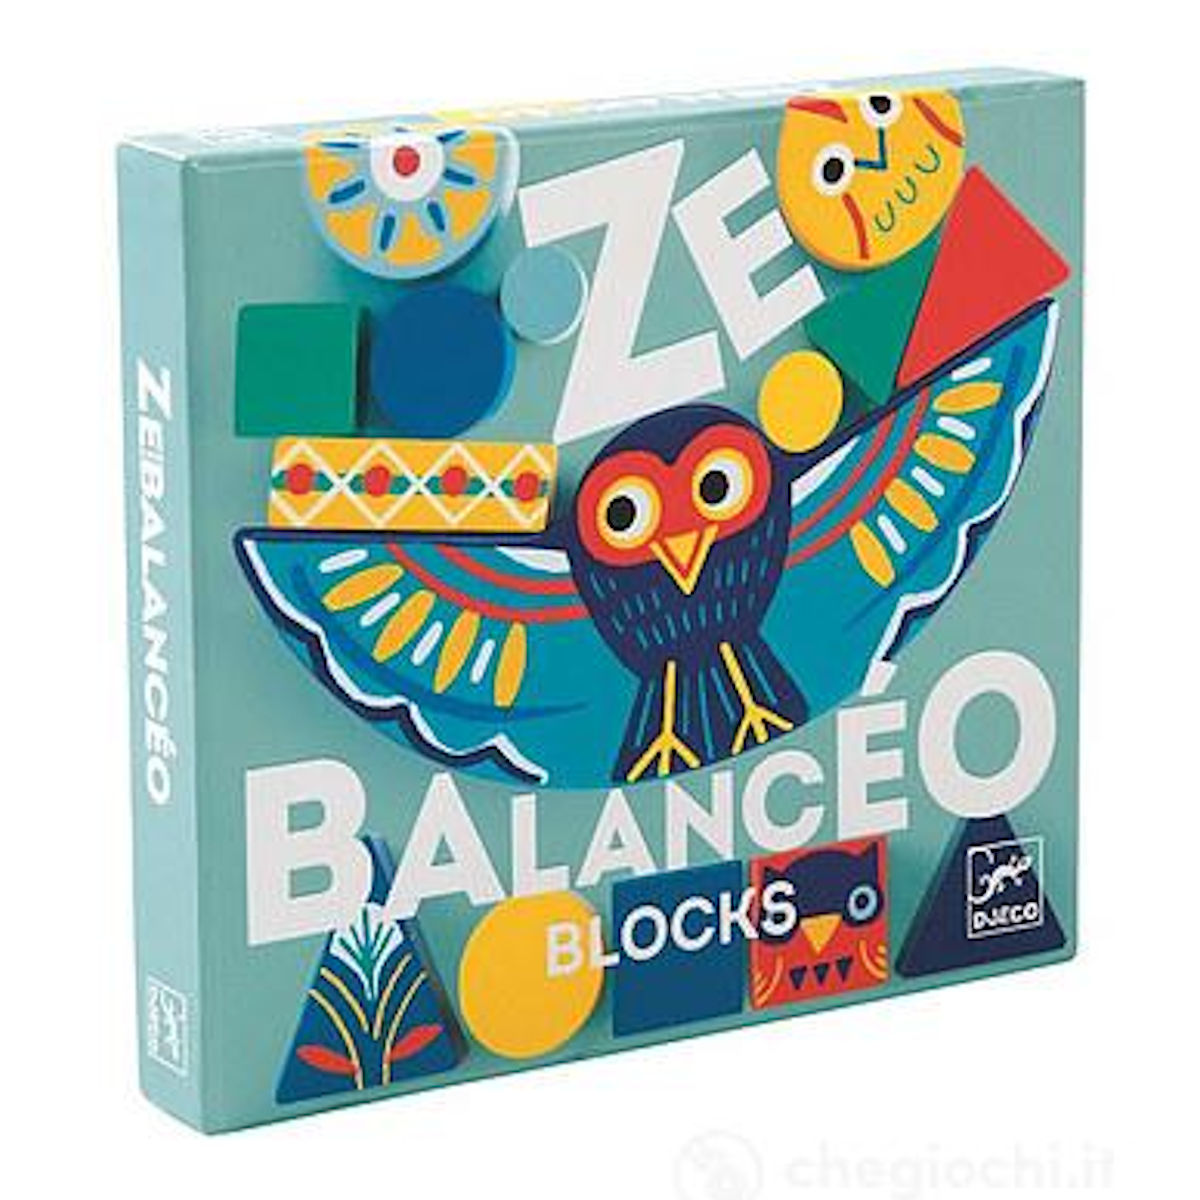 Ze Balancèo - Gioco di Bilanciamento - Djeco